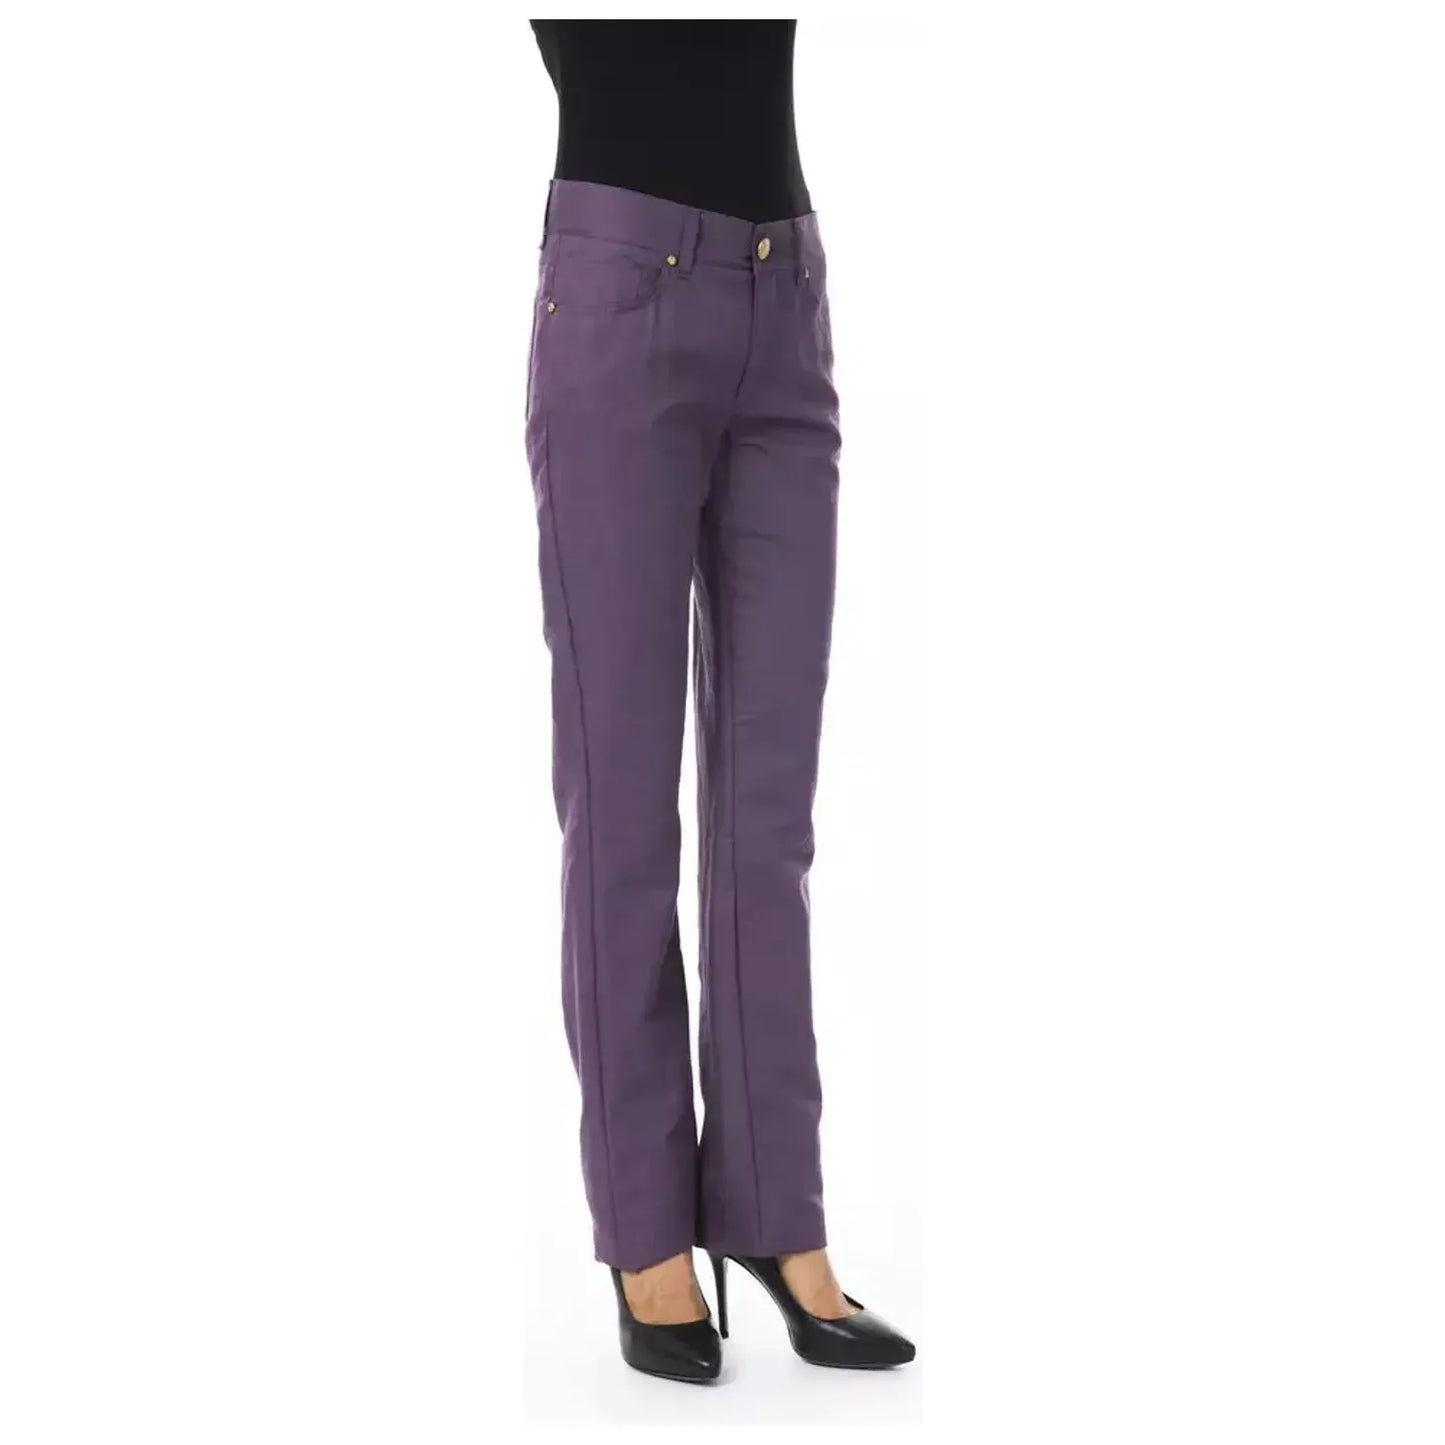 BYBLOS Chic Purple Cotton-Blend Trousers violet-cotton-jeans-pant stock_product_image_17632_1002858928-31-fa134731-877.webp